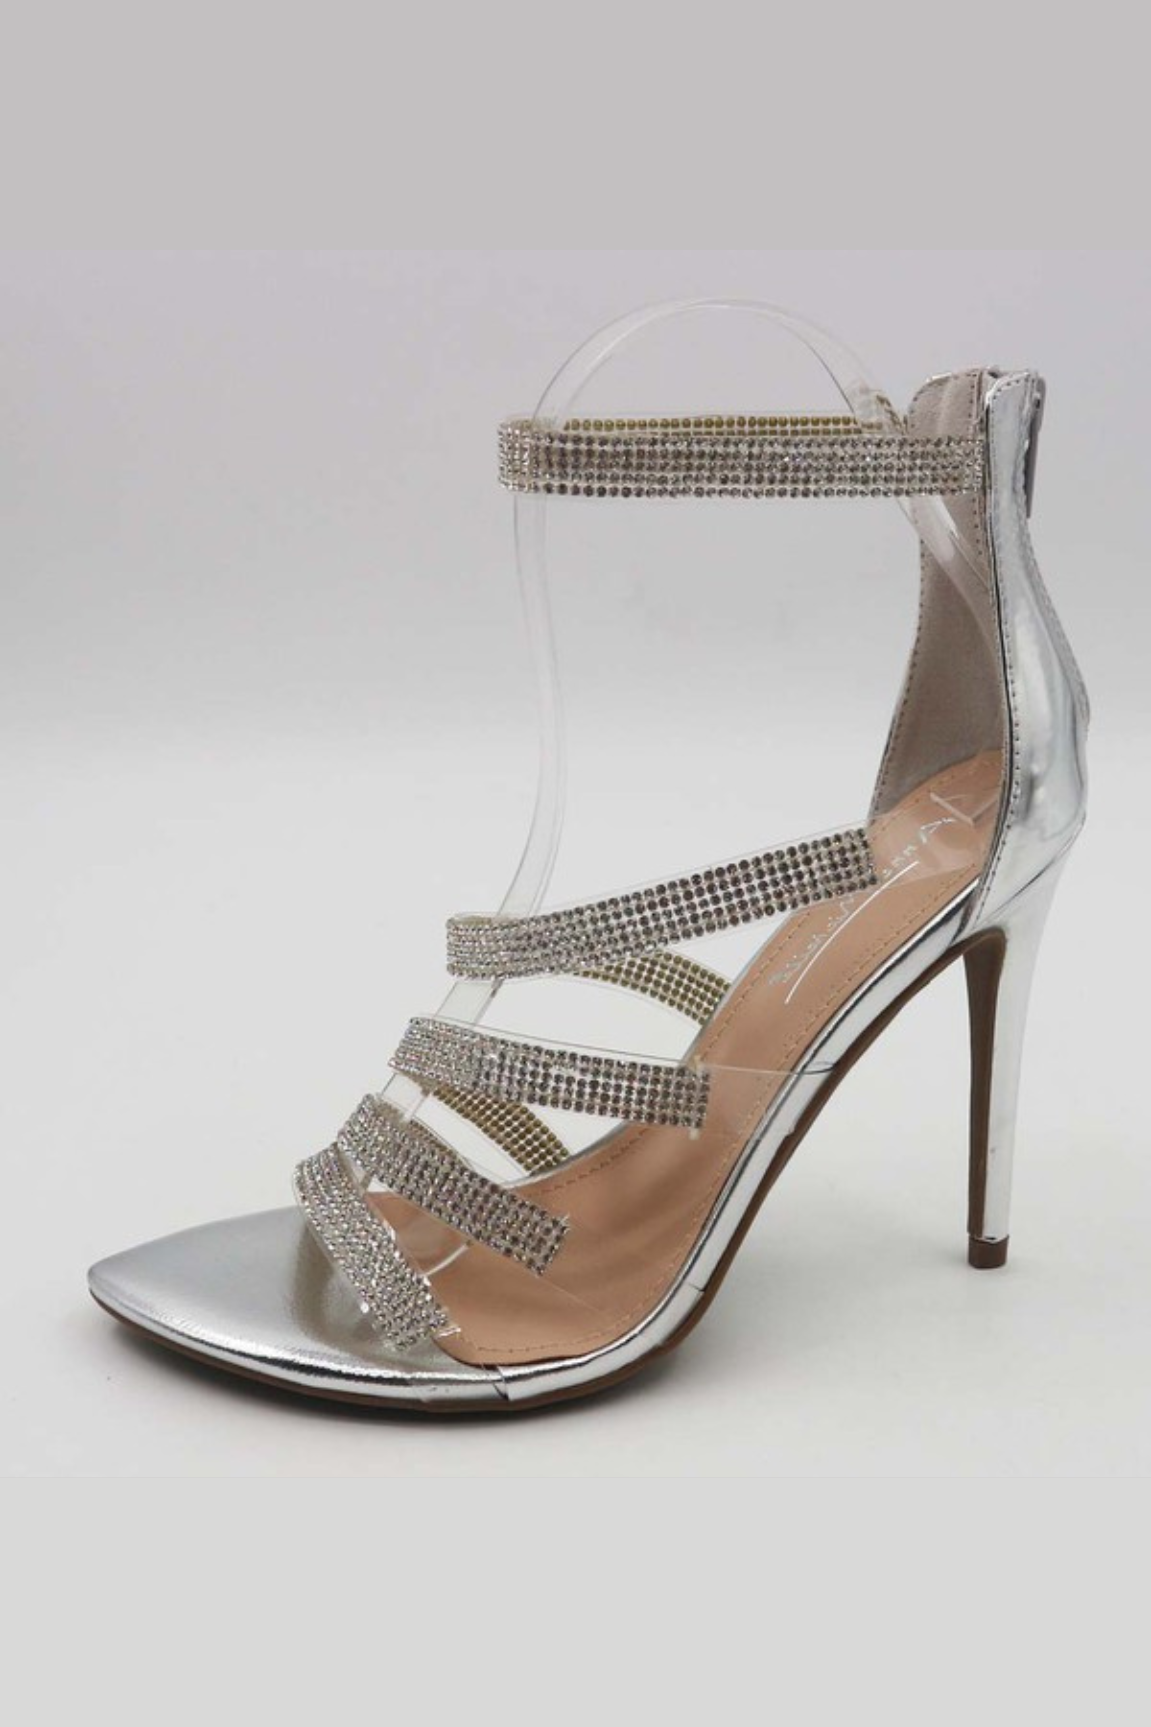 Dancing Queen High Heels (Silver)